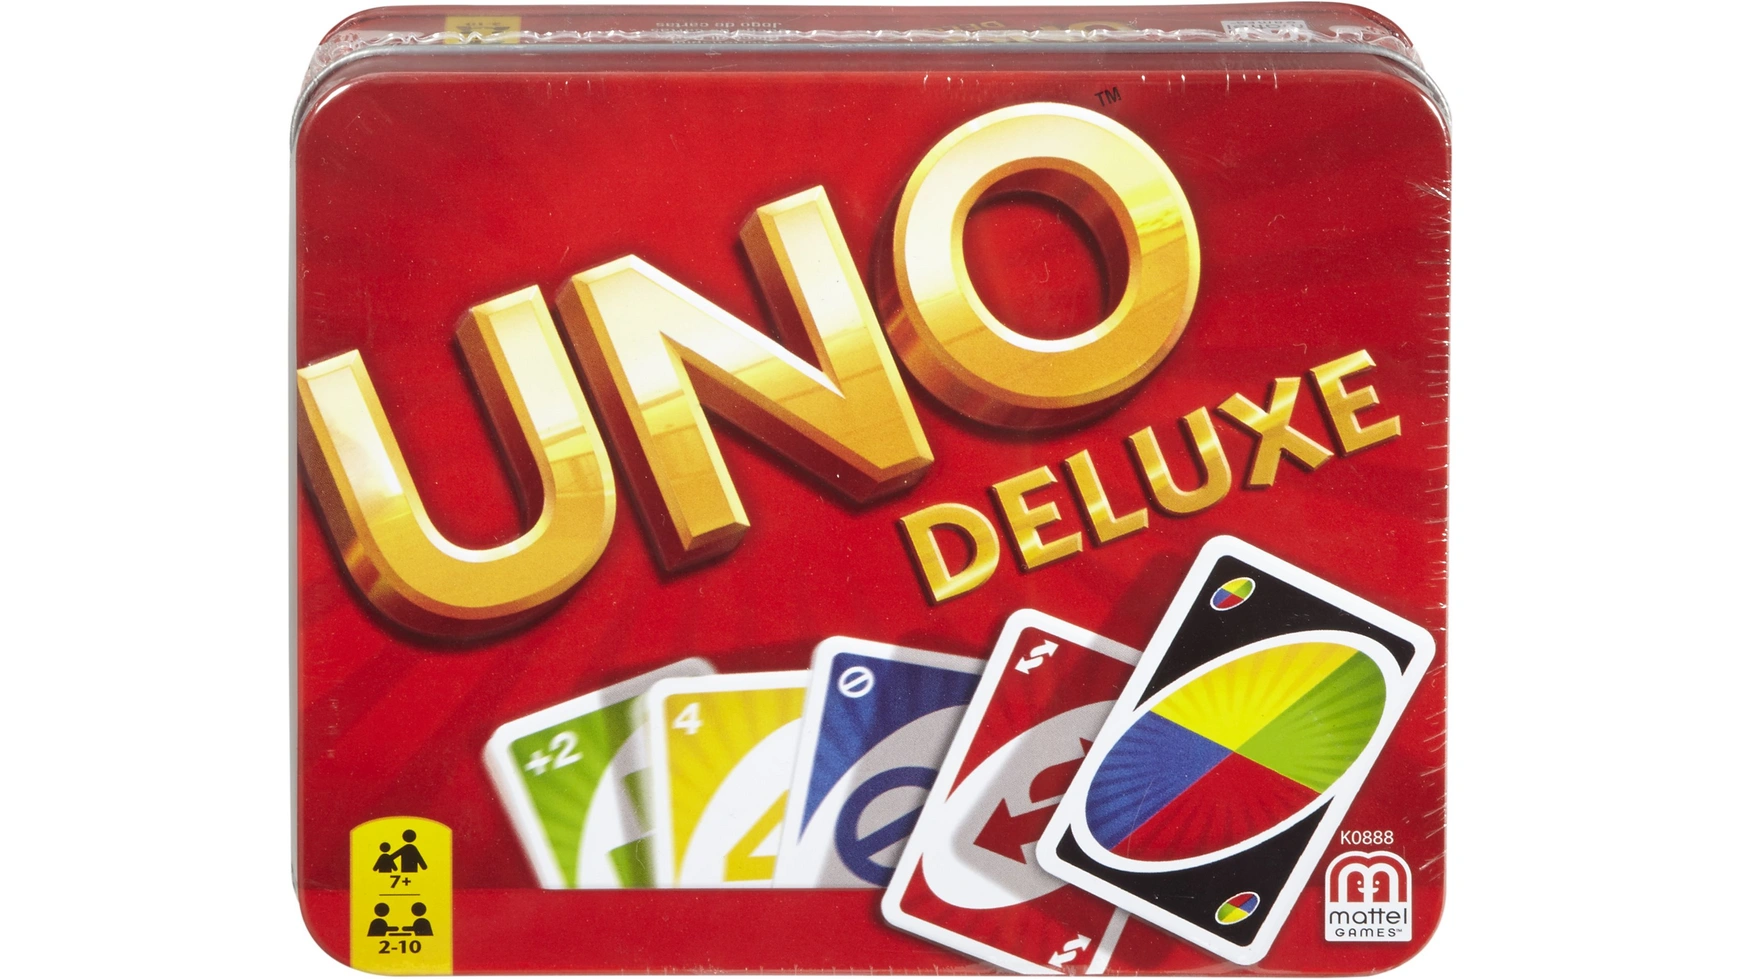 Металлическая коробка Mattel Games UNO Deluxe, карточная игра, настольная игра, детская игра mattel card game uno deluxe